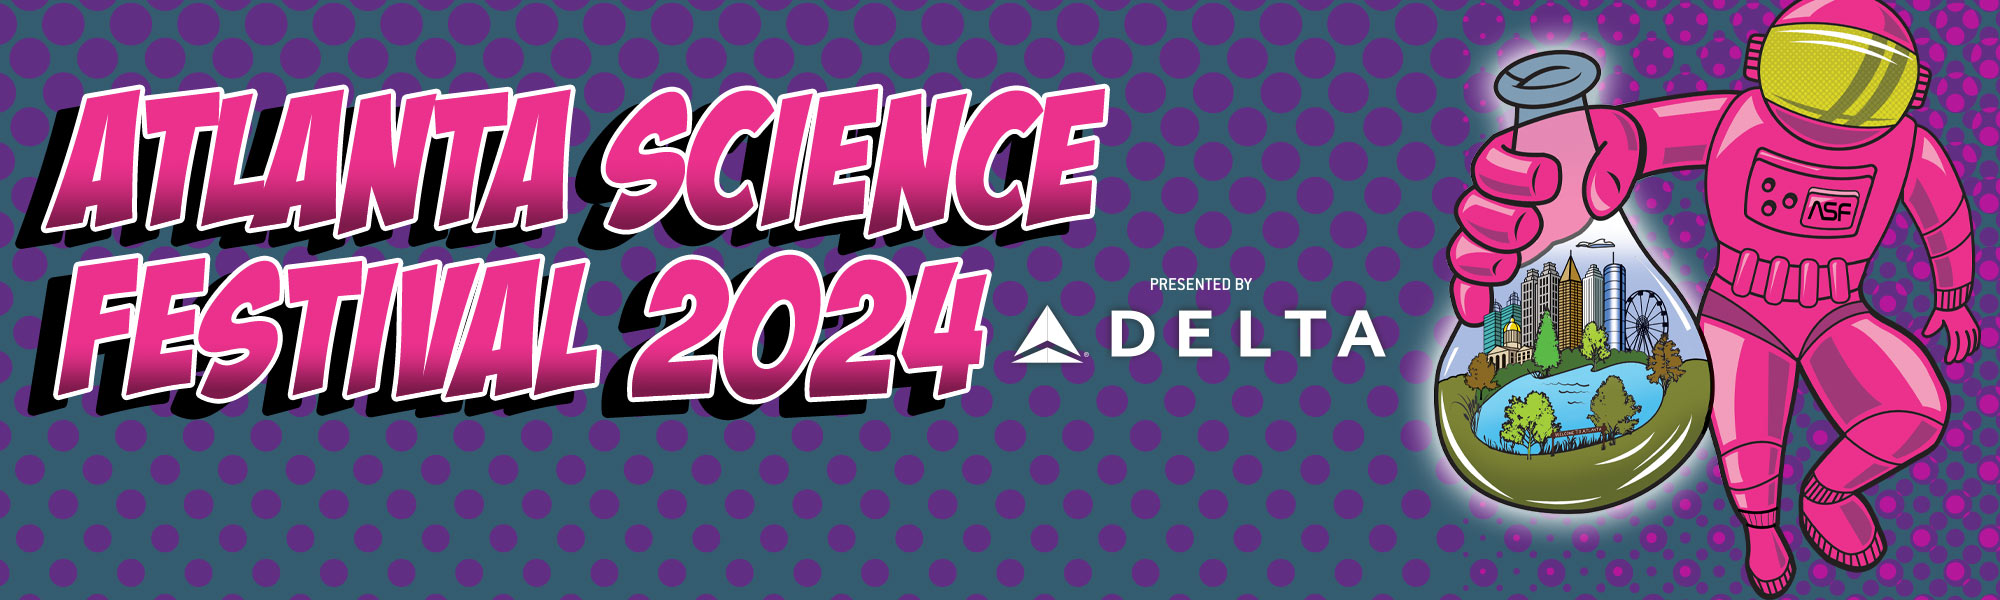 2024 Atlanta Science Festival, presented by Delta